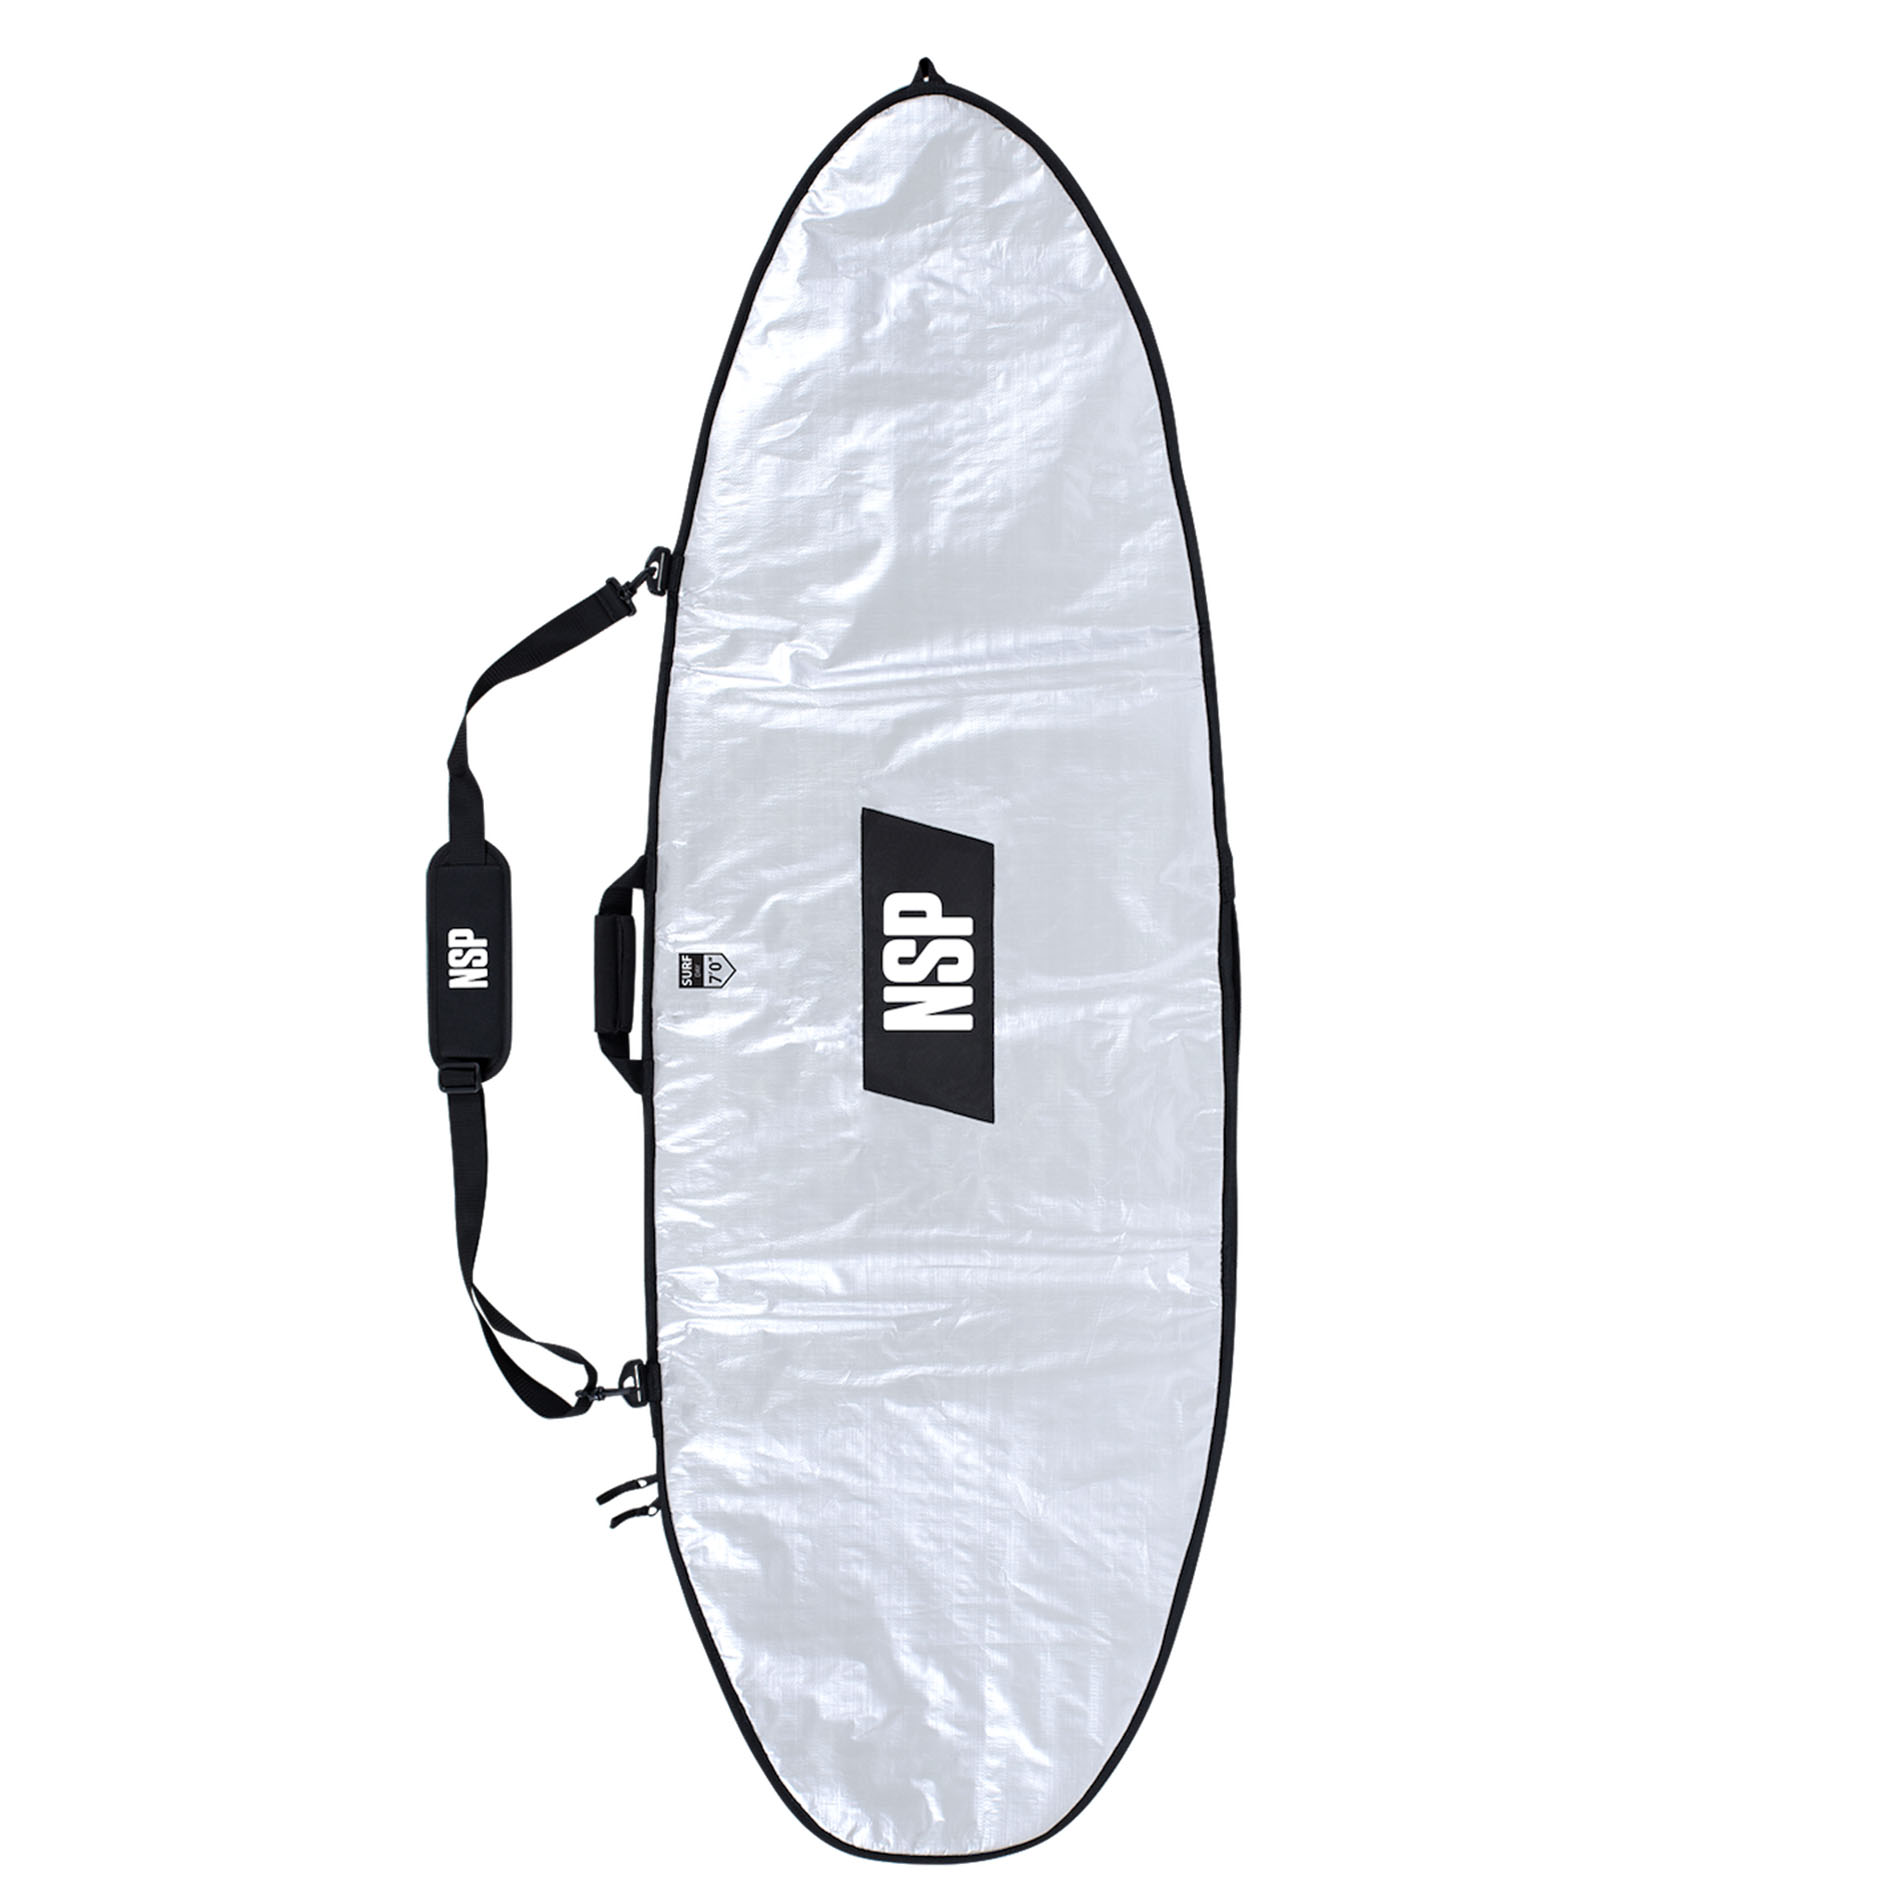 Shortboard surfboard travel bag 5'8